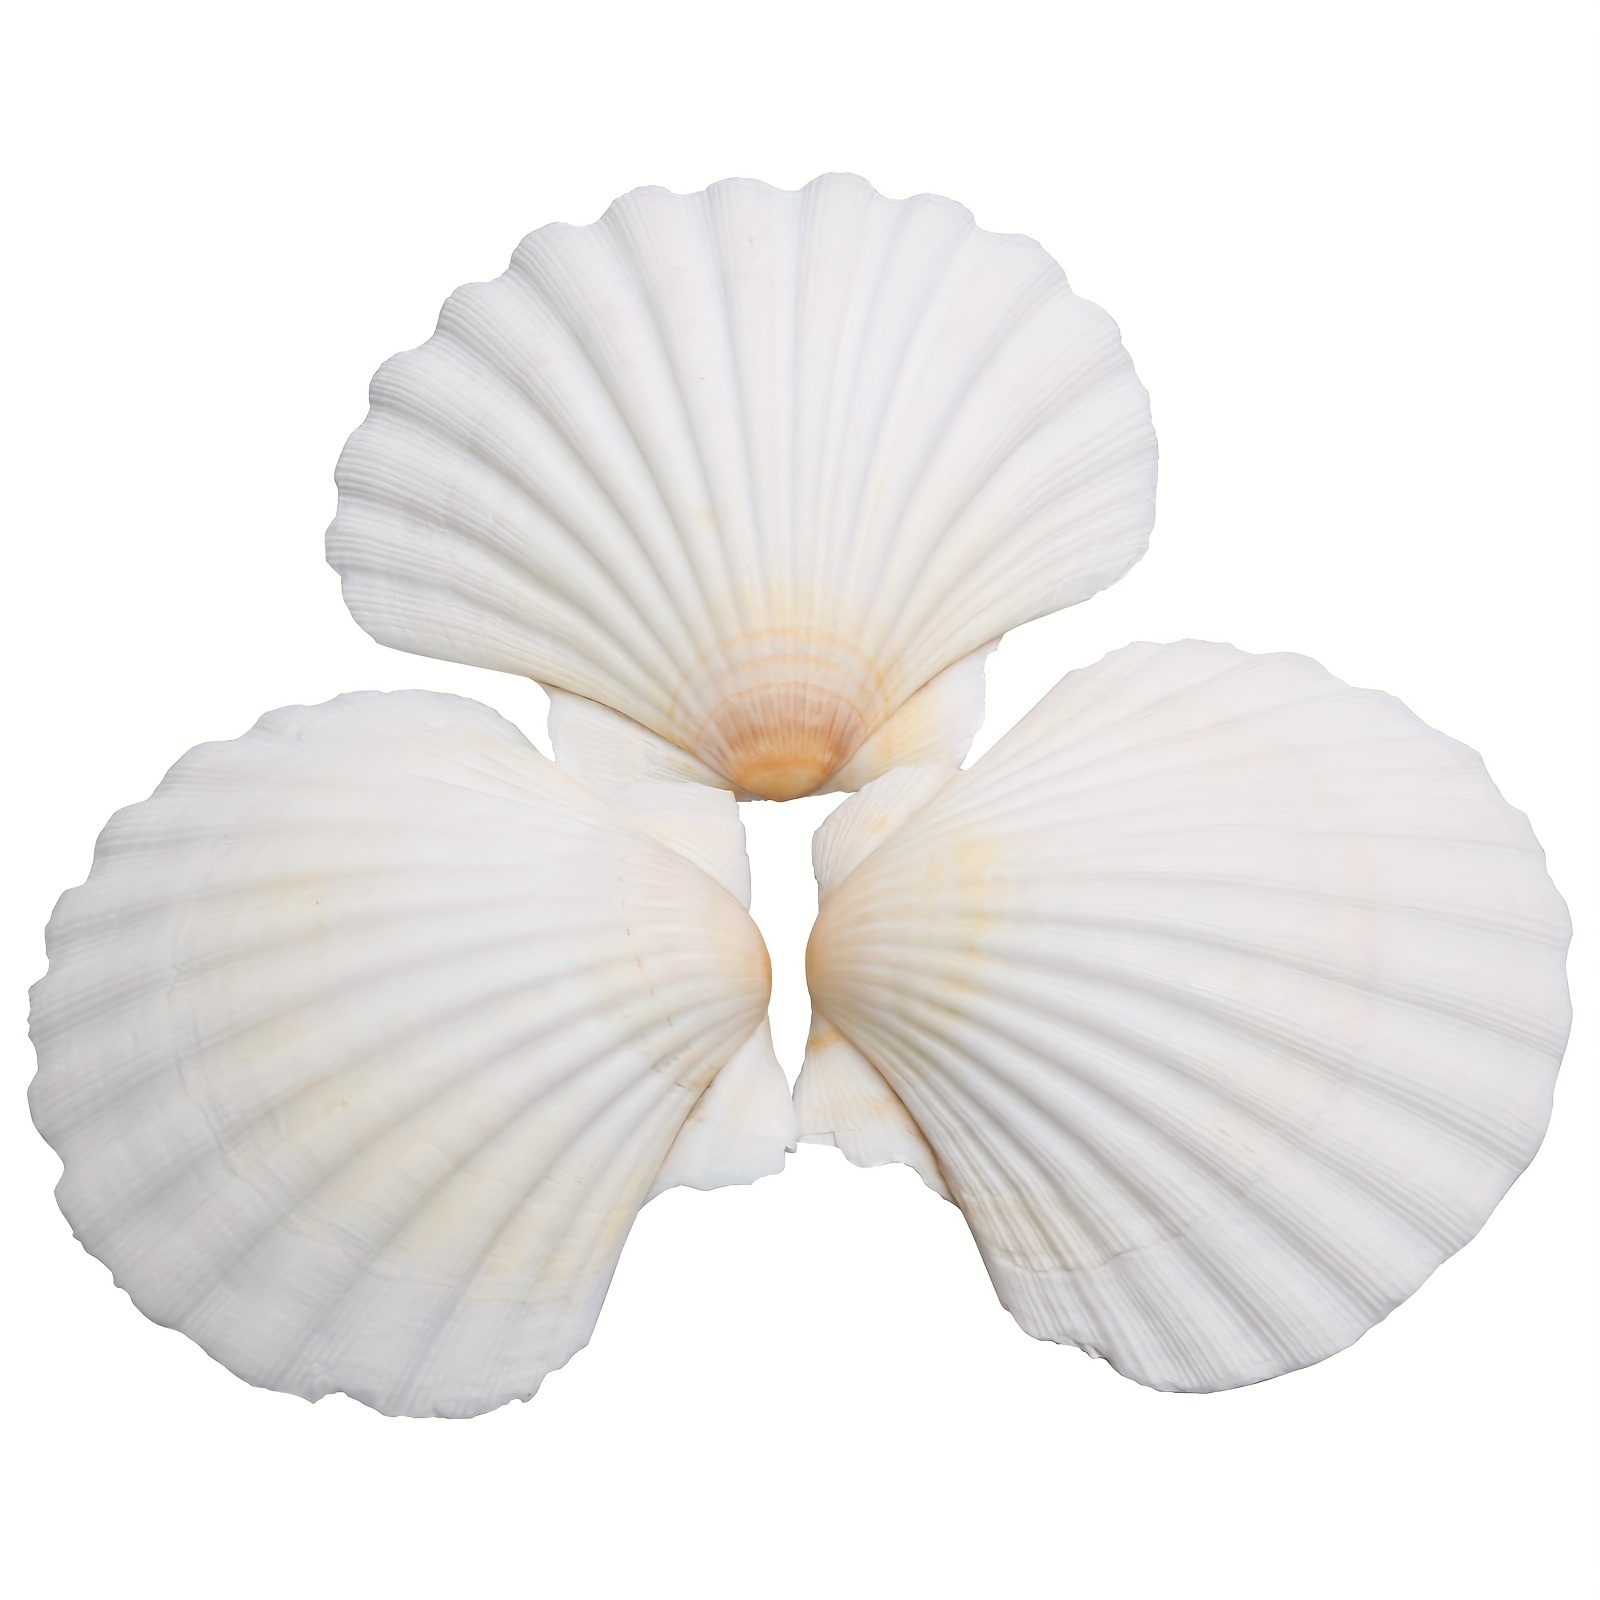 Natural Sea Shell Decoration, Natural Sea Shells Crafts